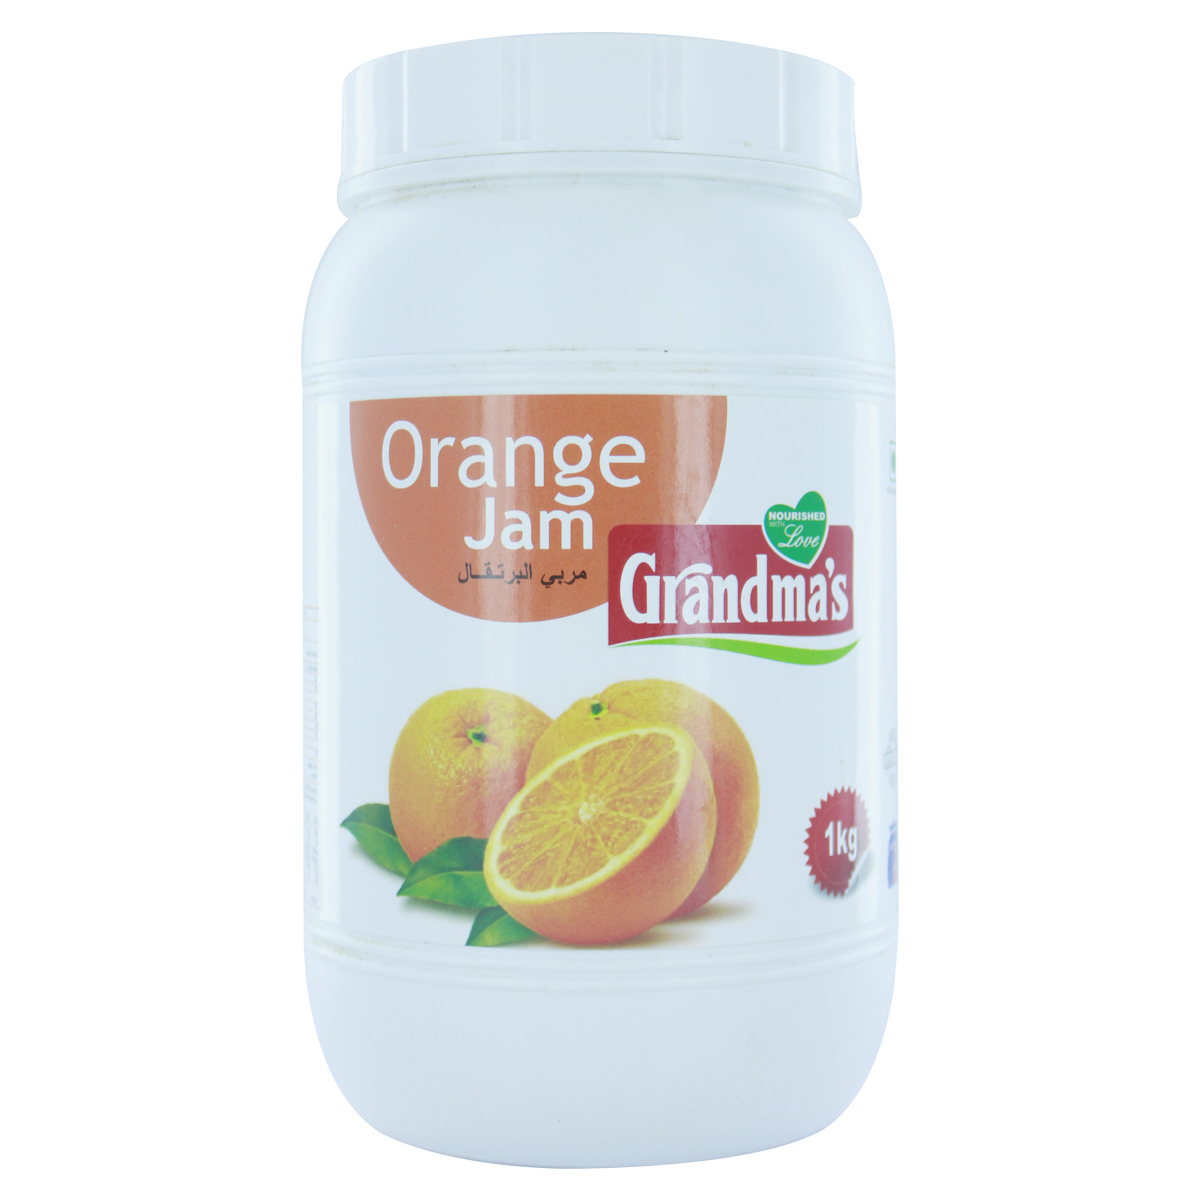 Grandmas Jam Orange 1kg